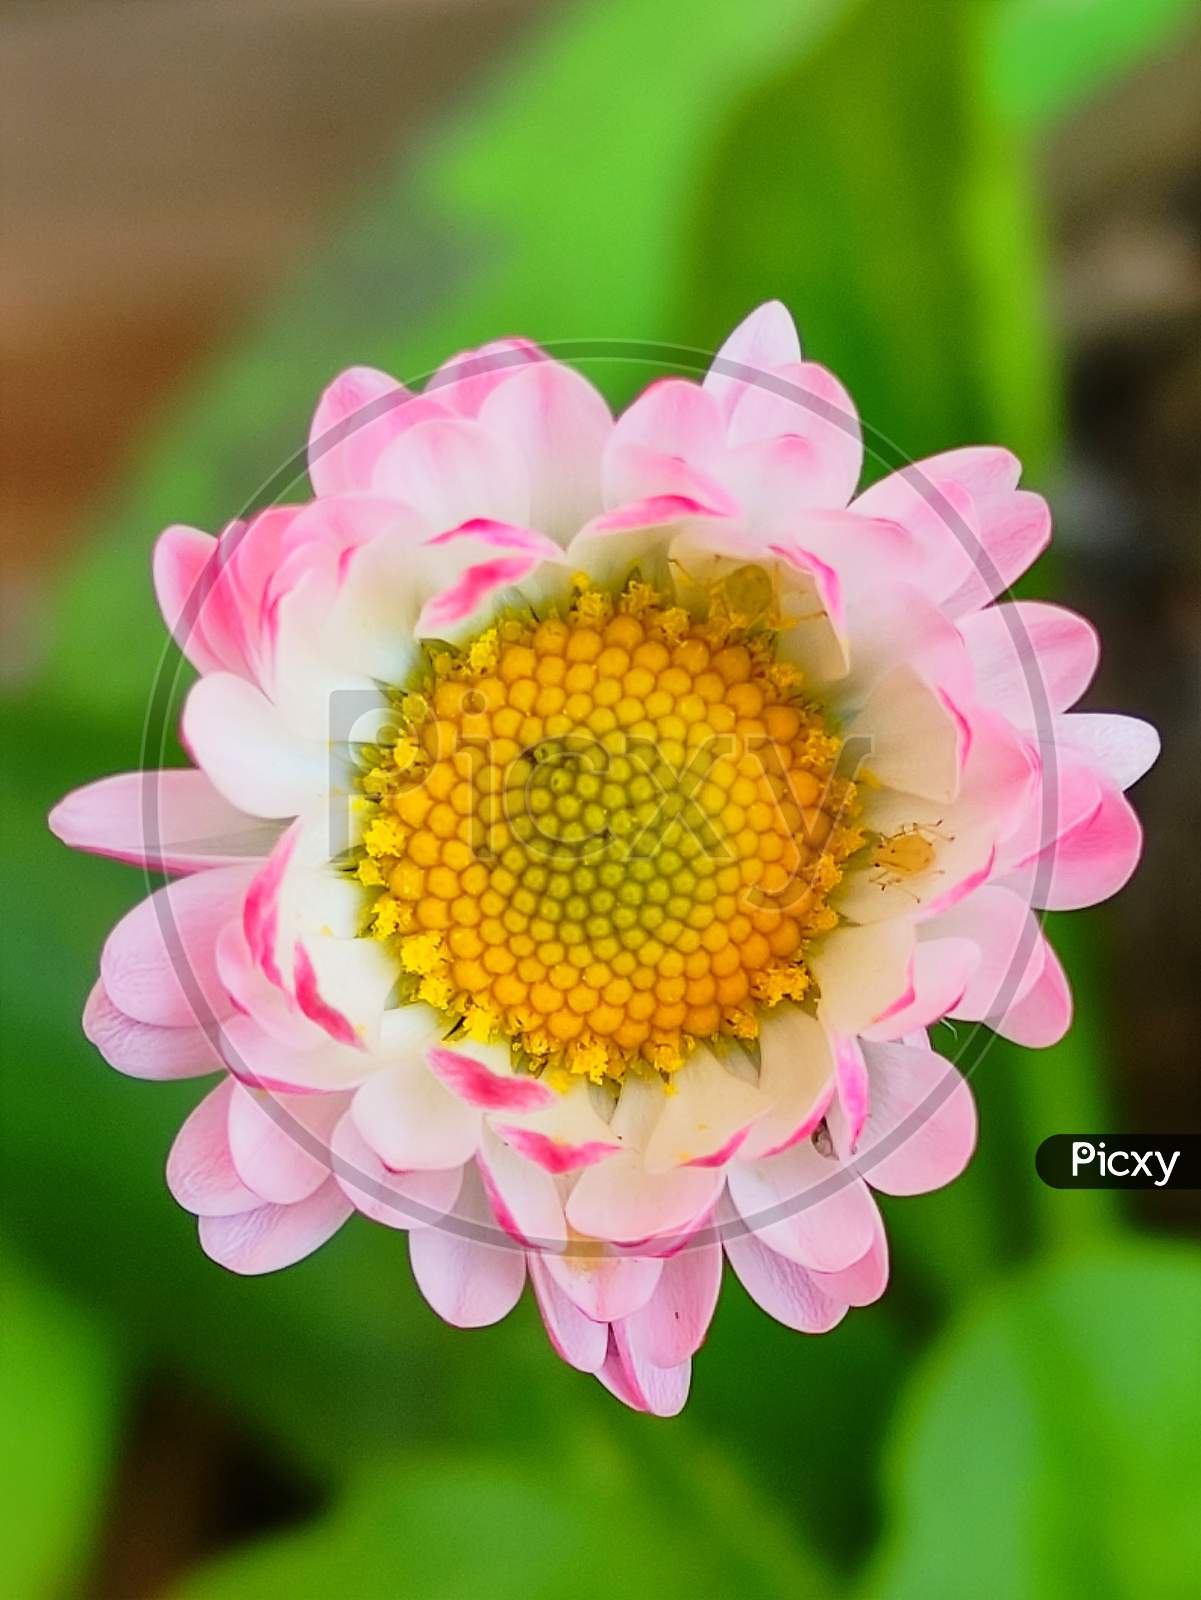 A cute pink flower.